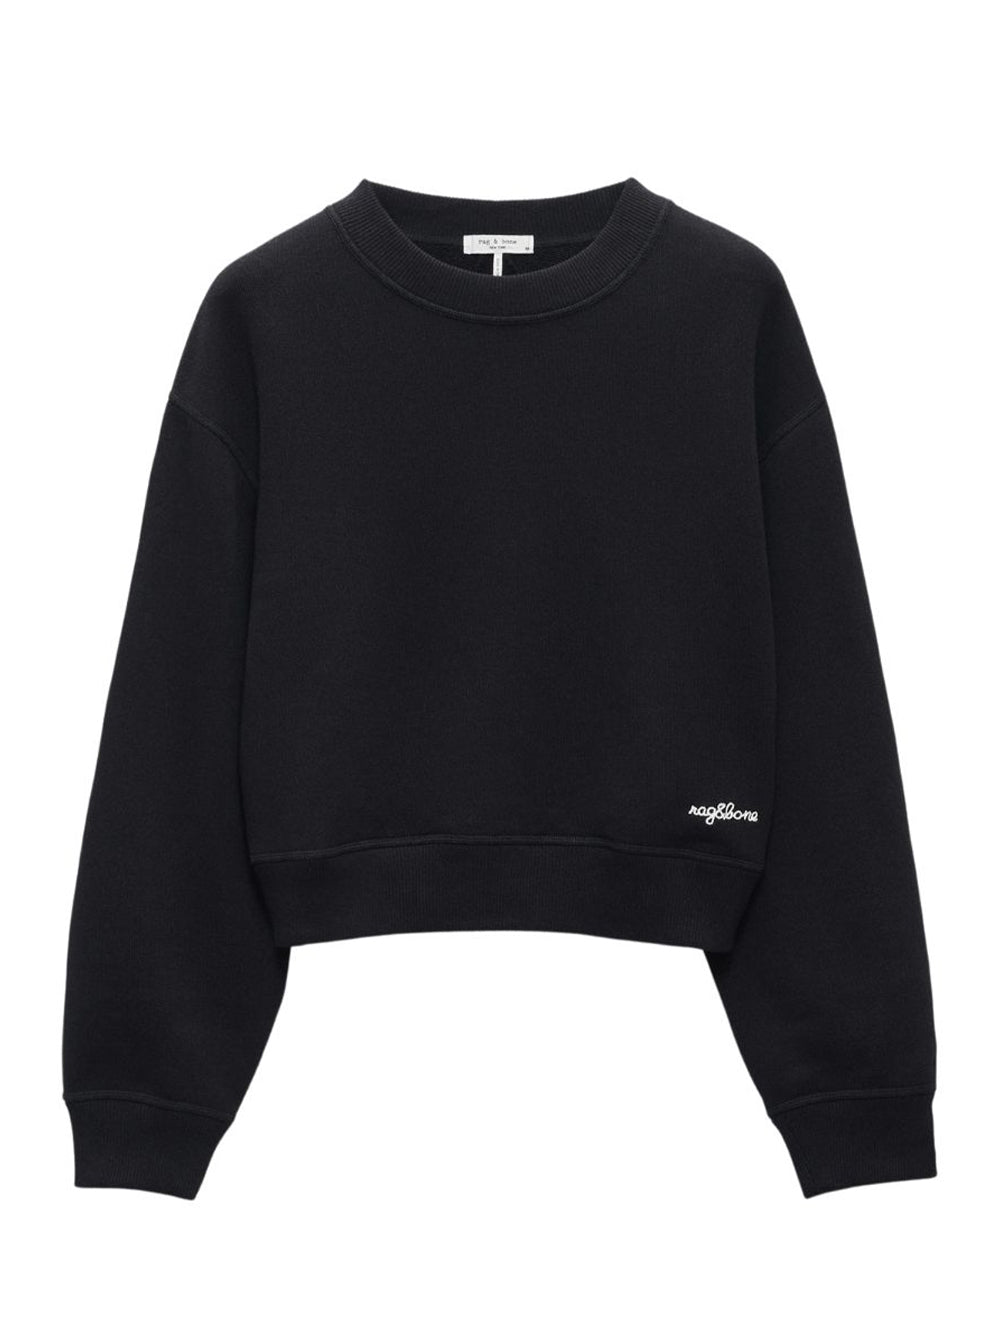 Vintage Terry Sweatshirt (Black)